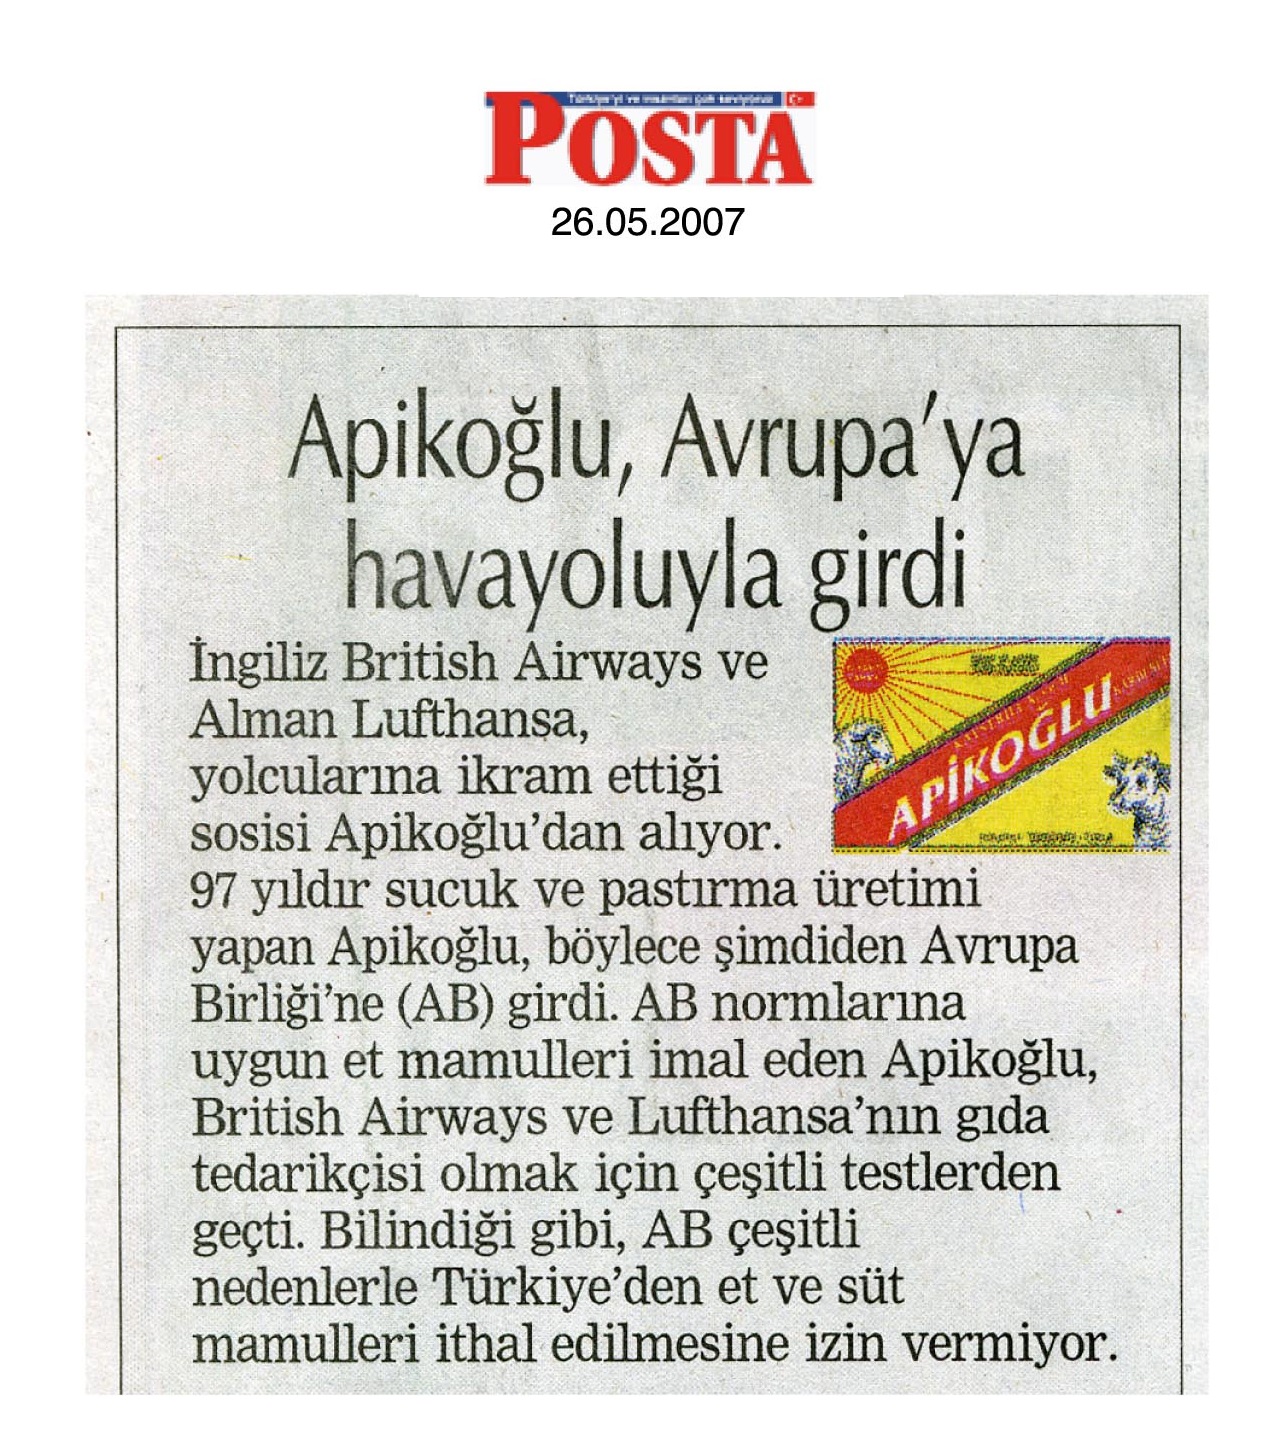 Apikoğlu Posta Gazetesi Haber Görseli